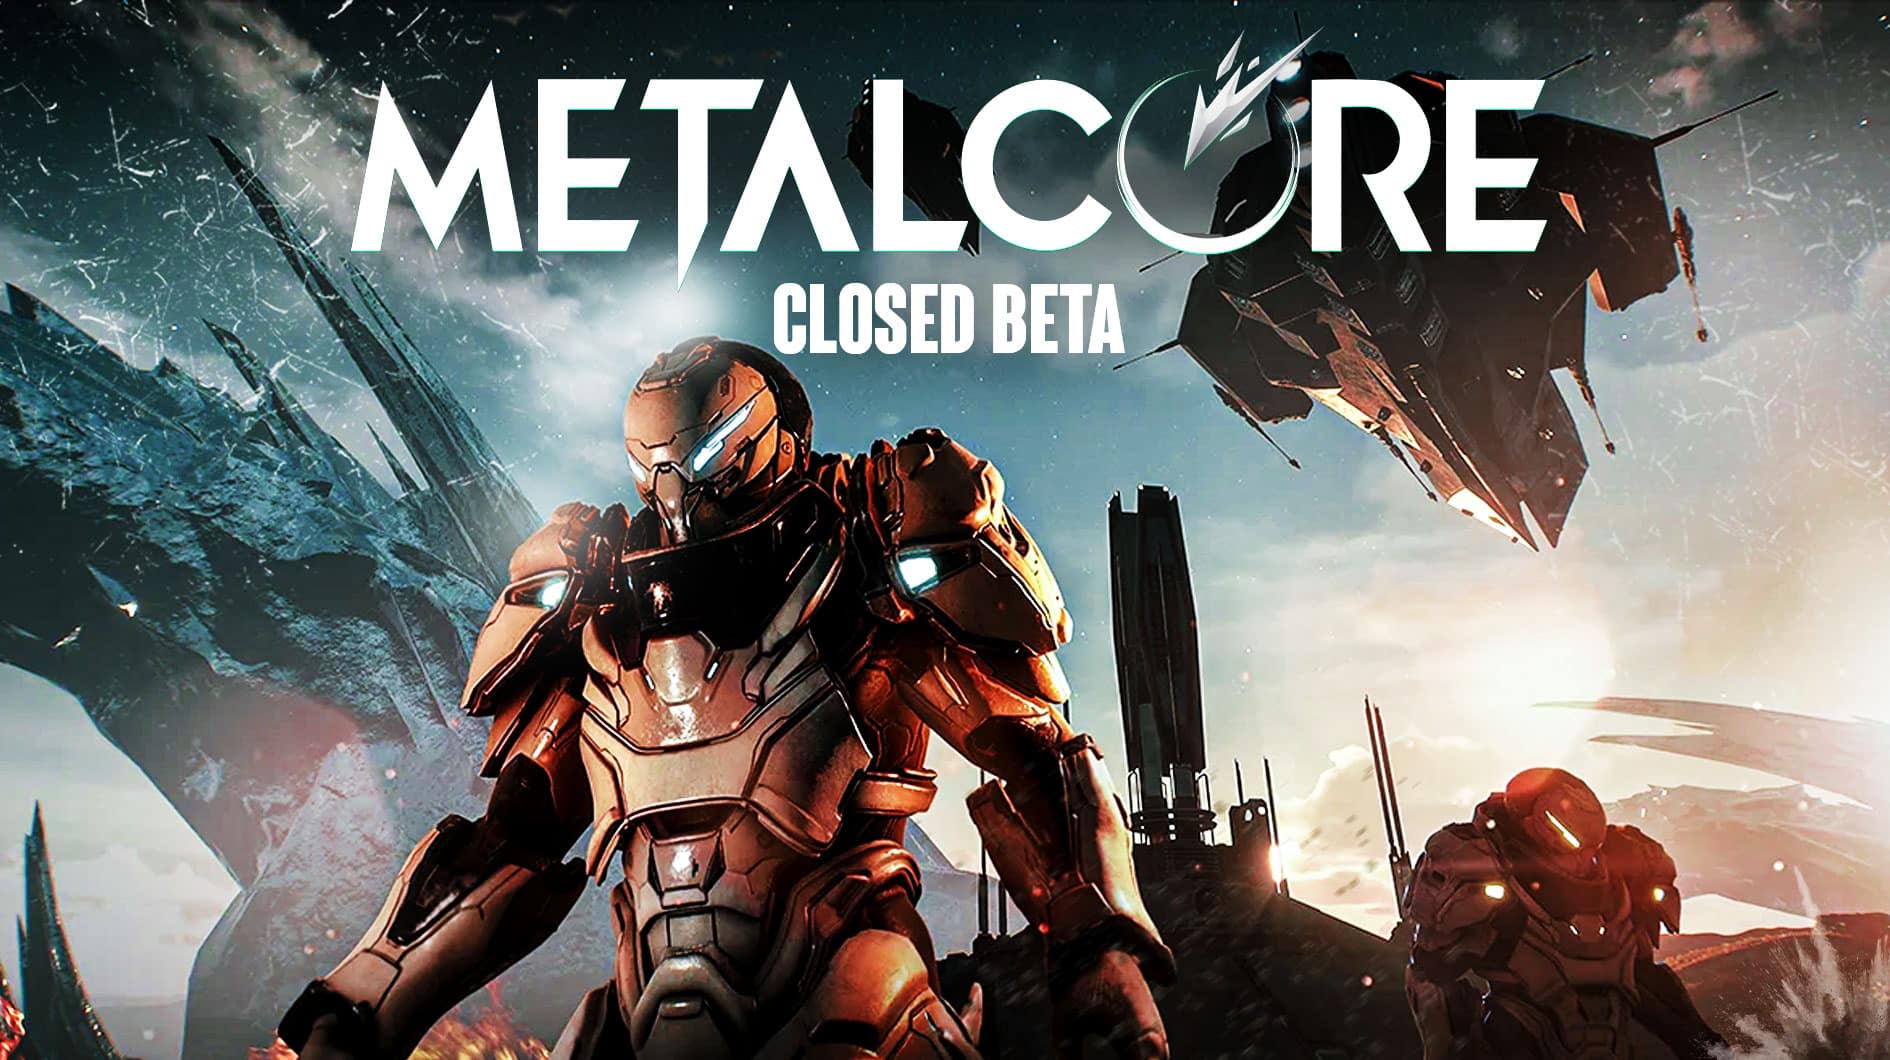 MetalCore сейчас находится во втором закрытом бета-тестировании